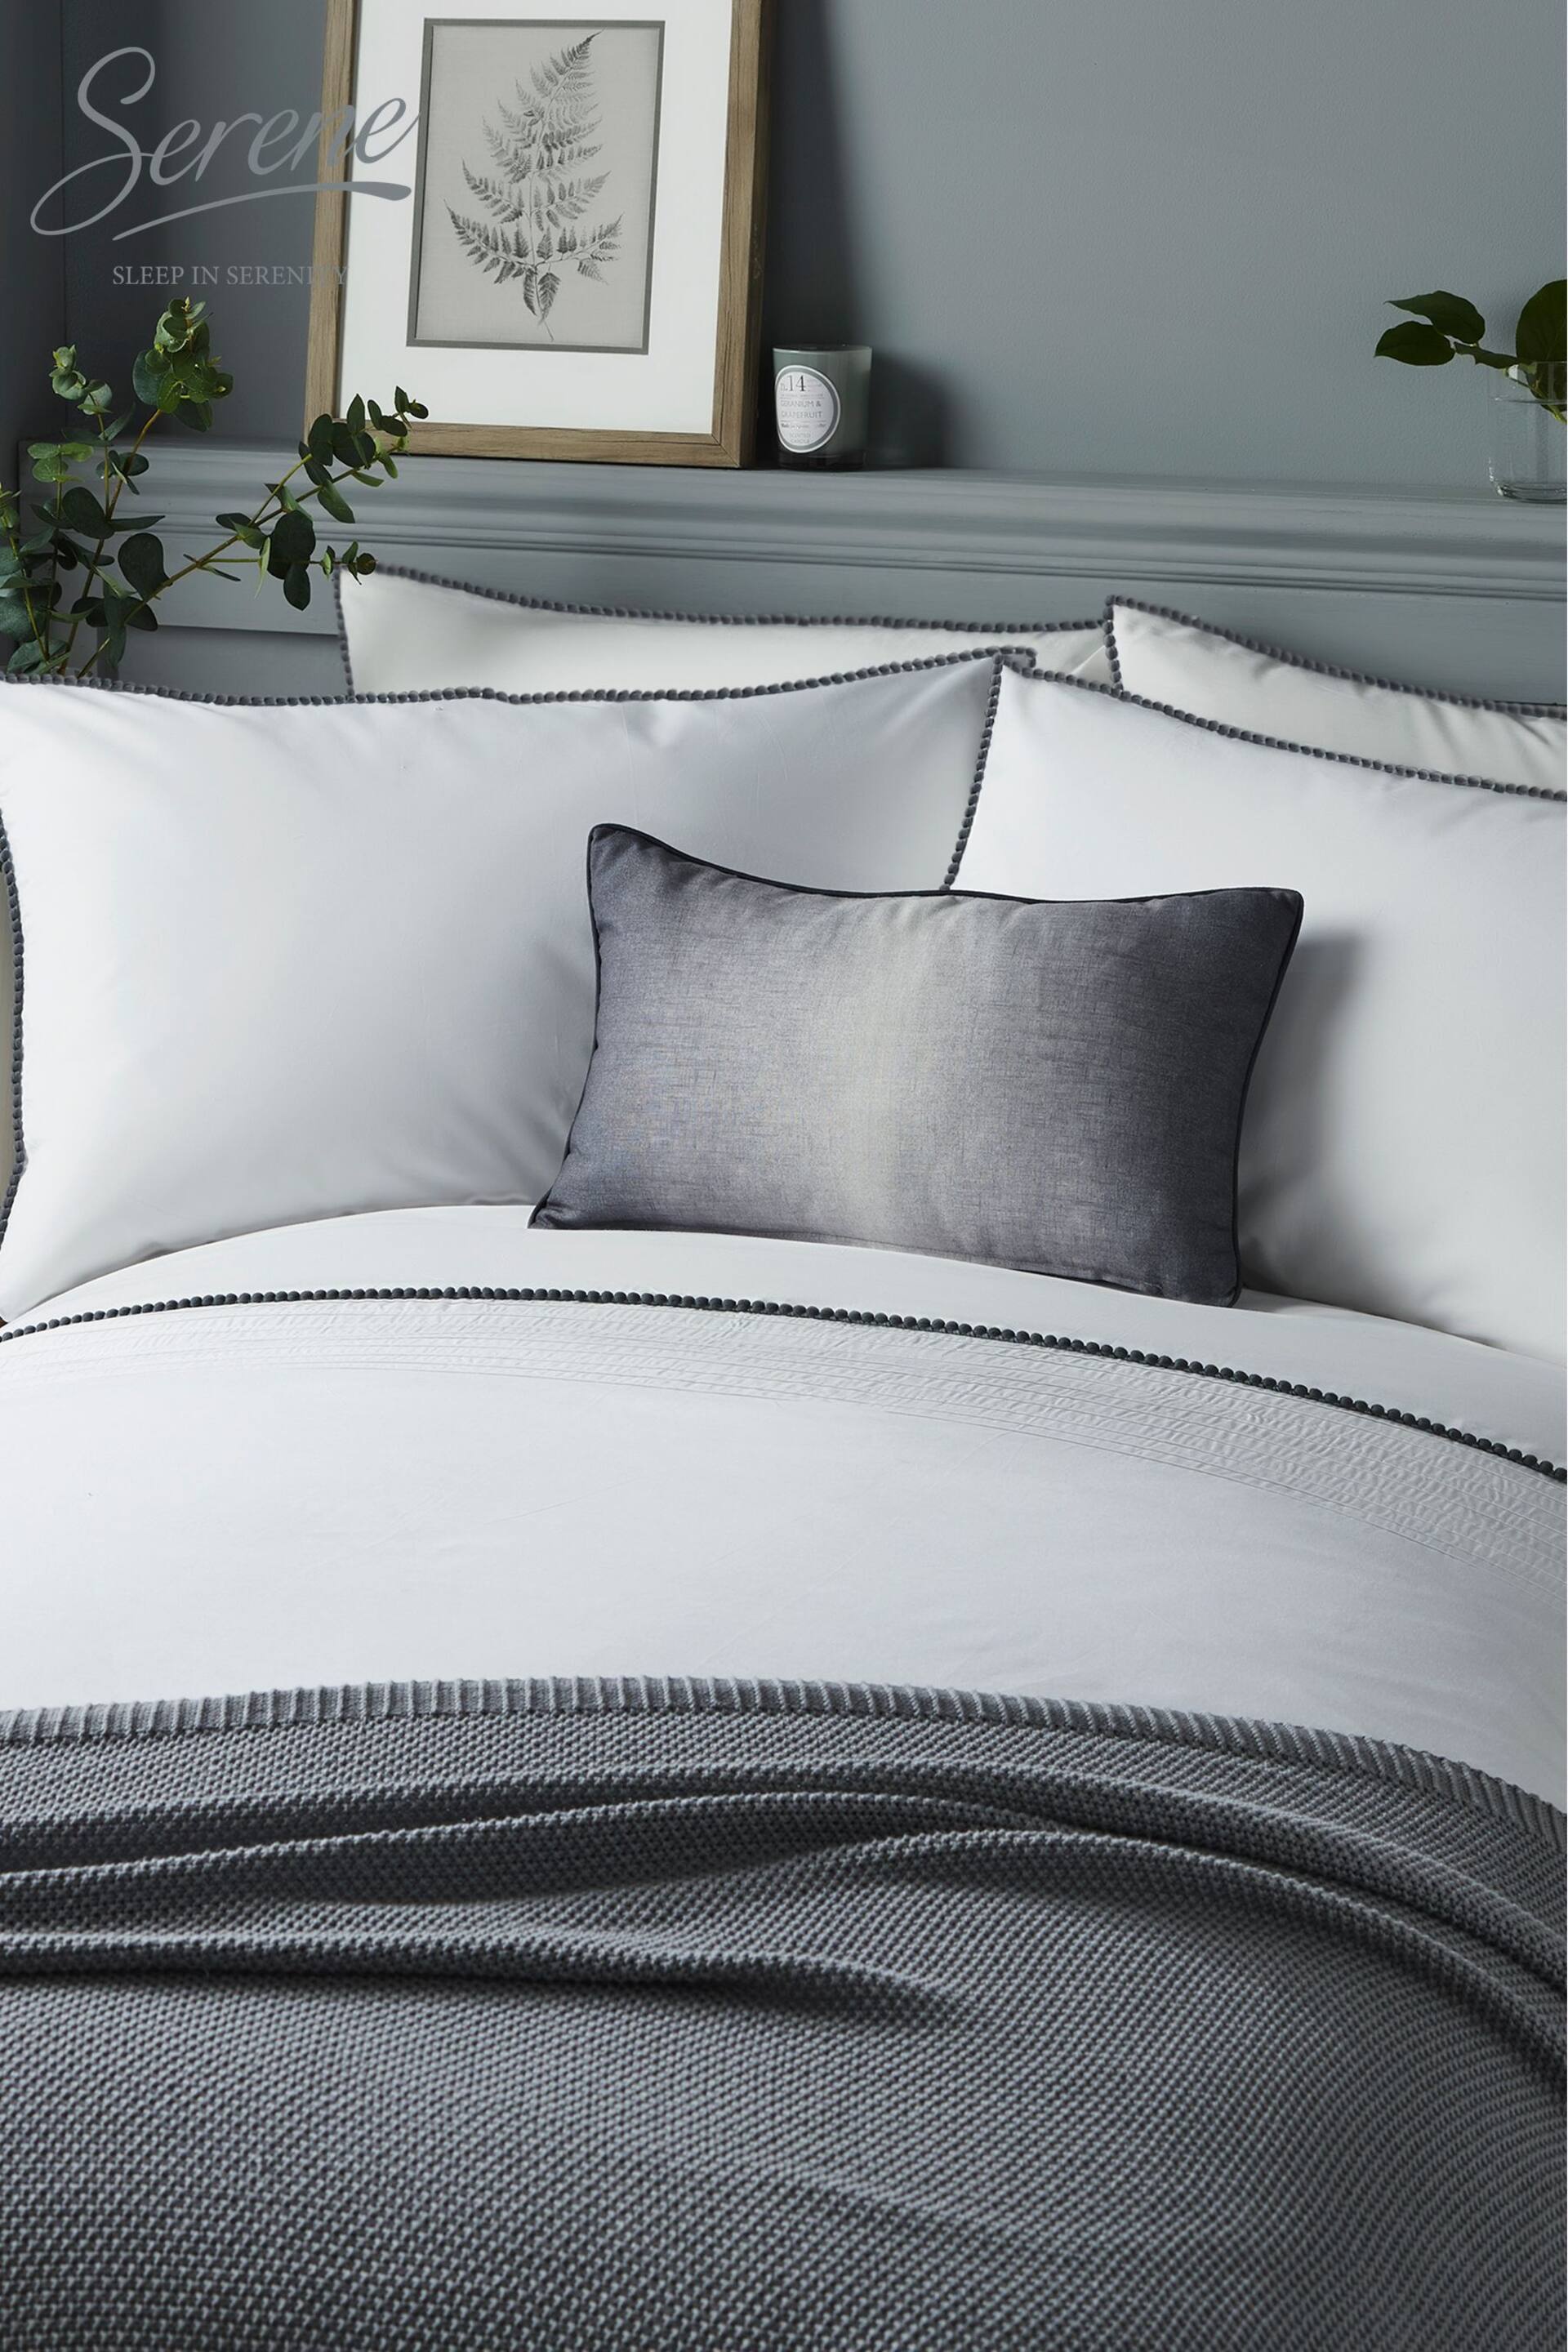 Serene White/Grey Pom Pom Duvet Cover and Pillowcase Set - Image 1 of 2